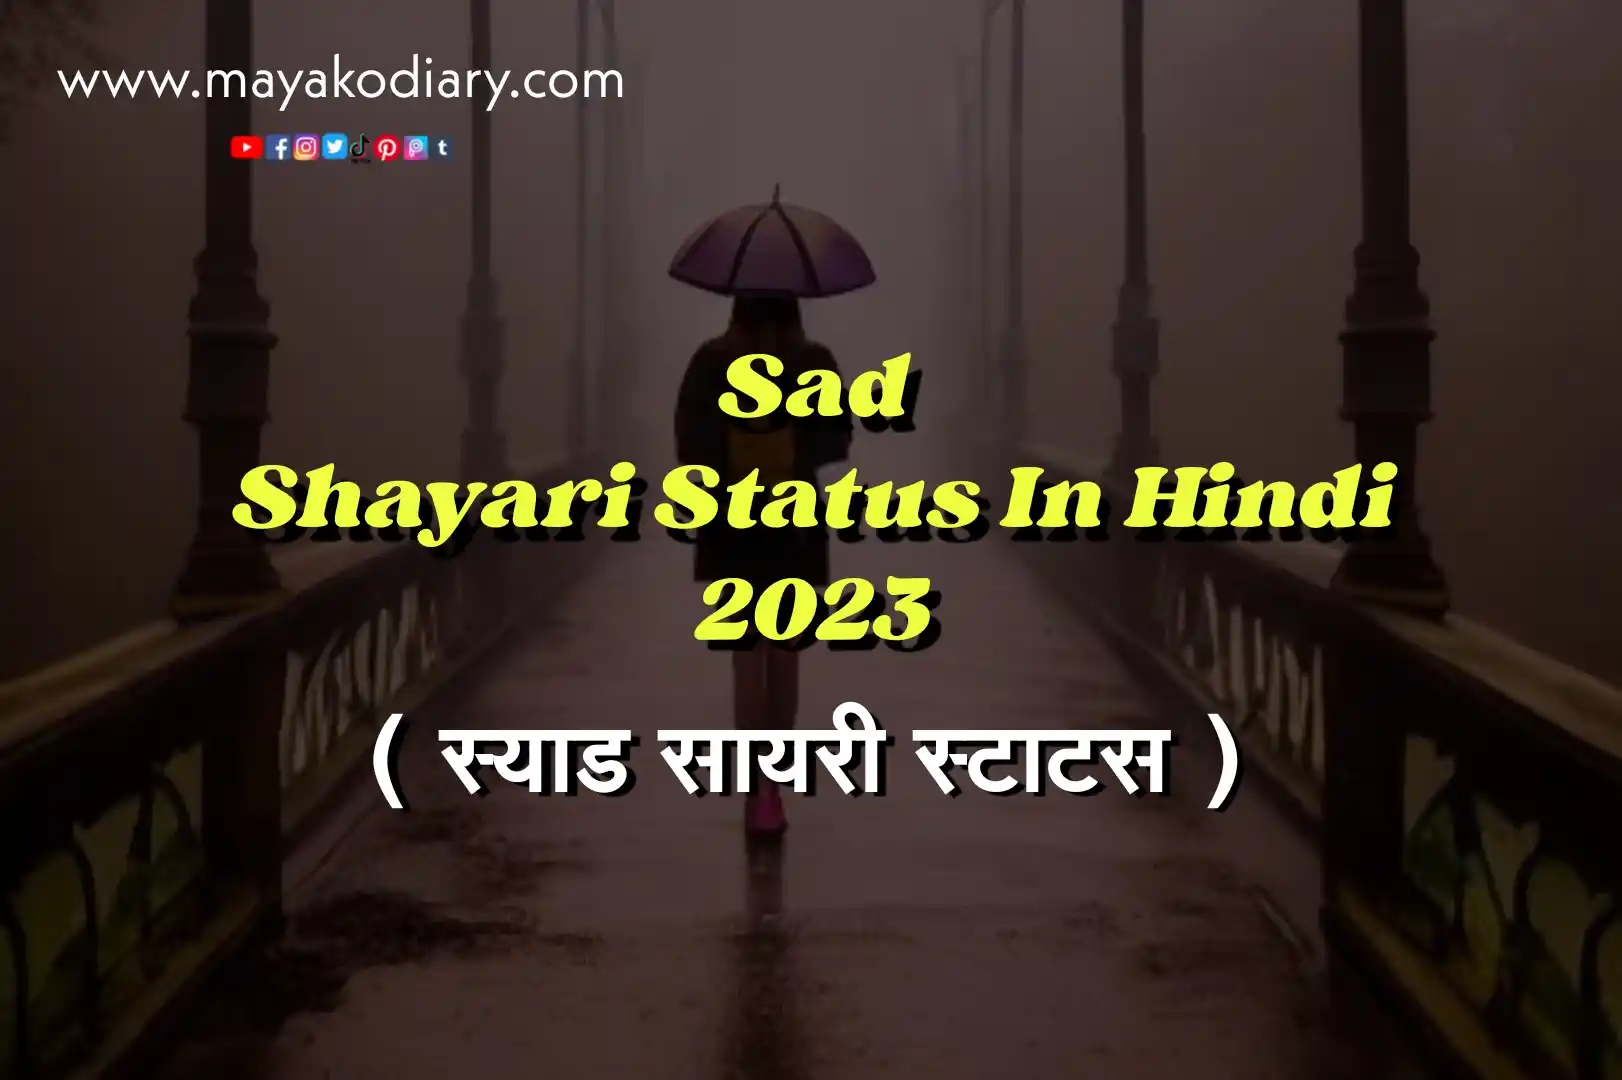 Sad Shayari Status in Hindi, Hindi Sad Shayari in English, Sad Shayari Image 2023